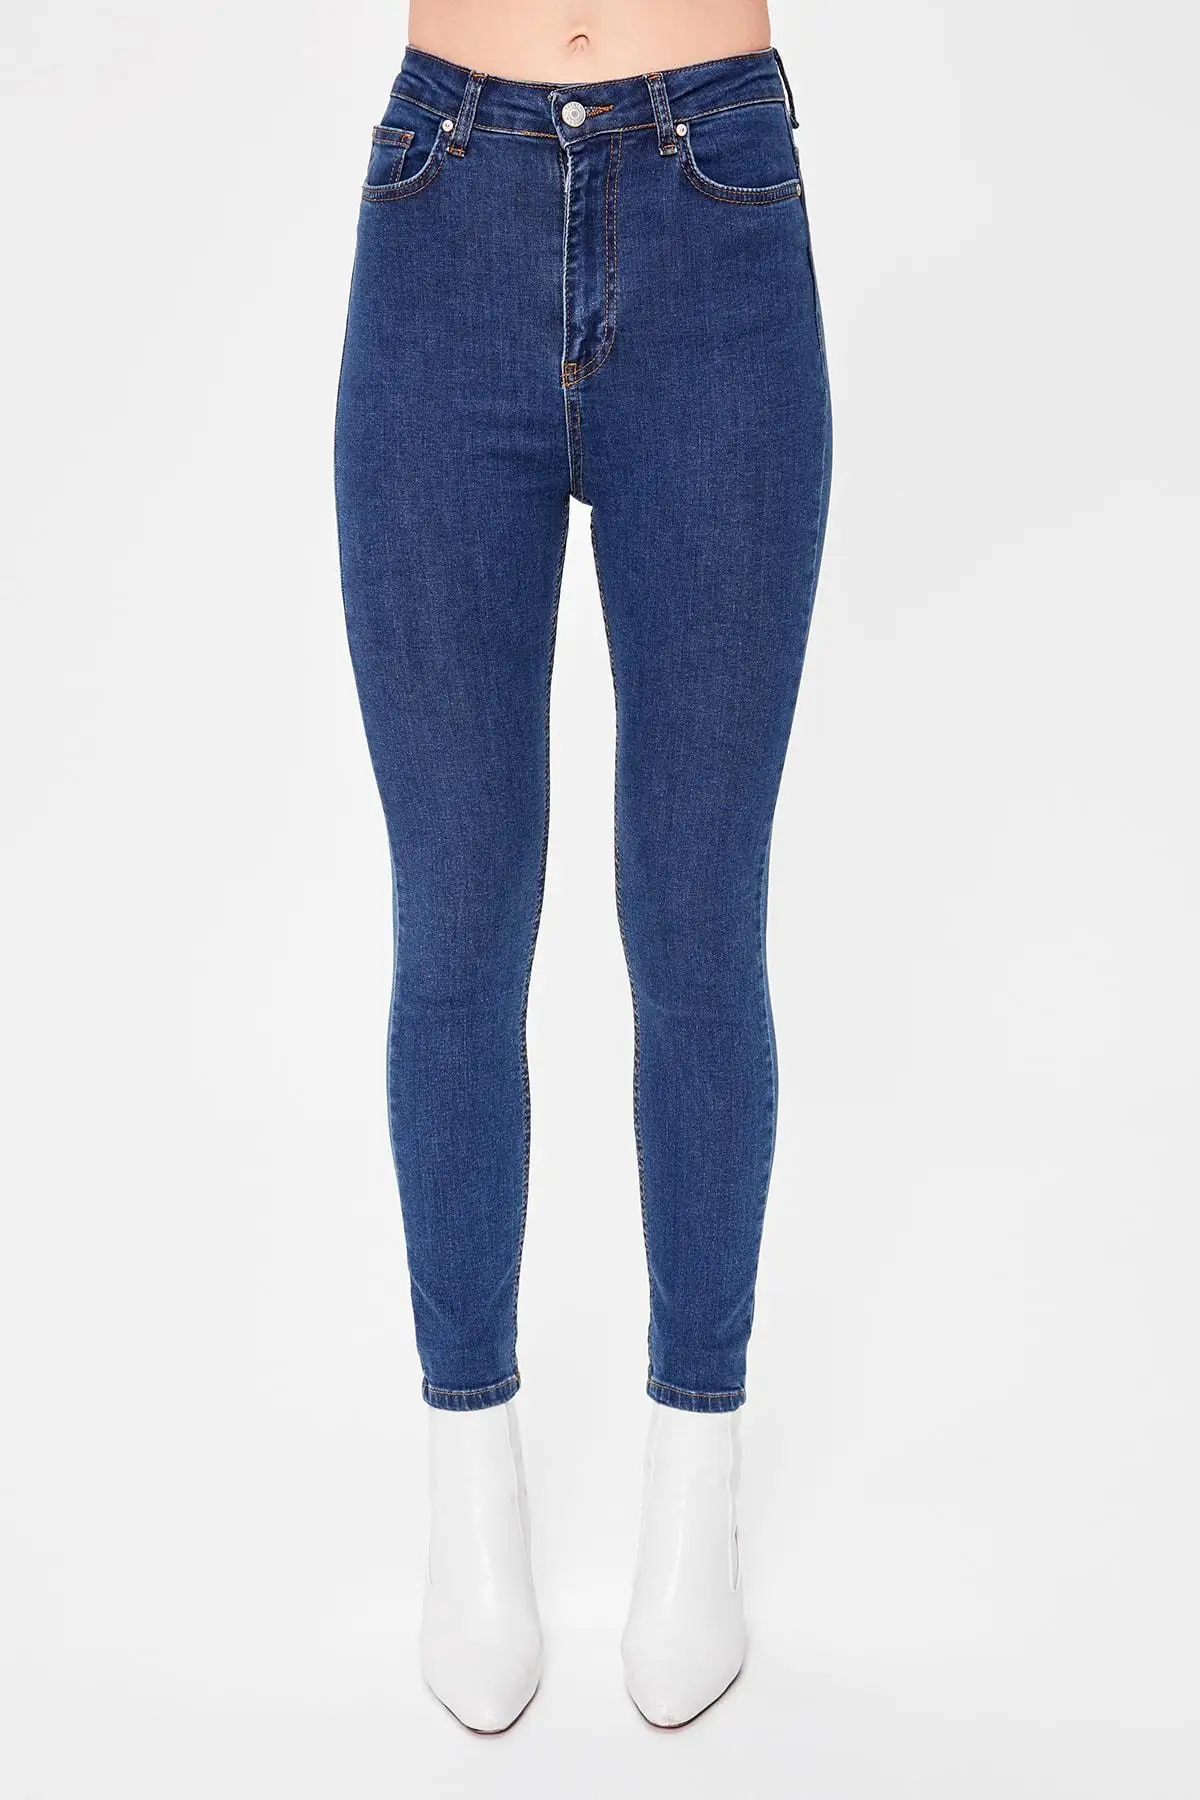 Trendyol синие джинсы скинни с высокой талией TWOAW20JE0226